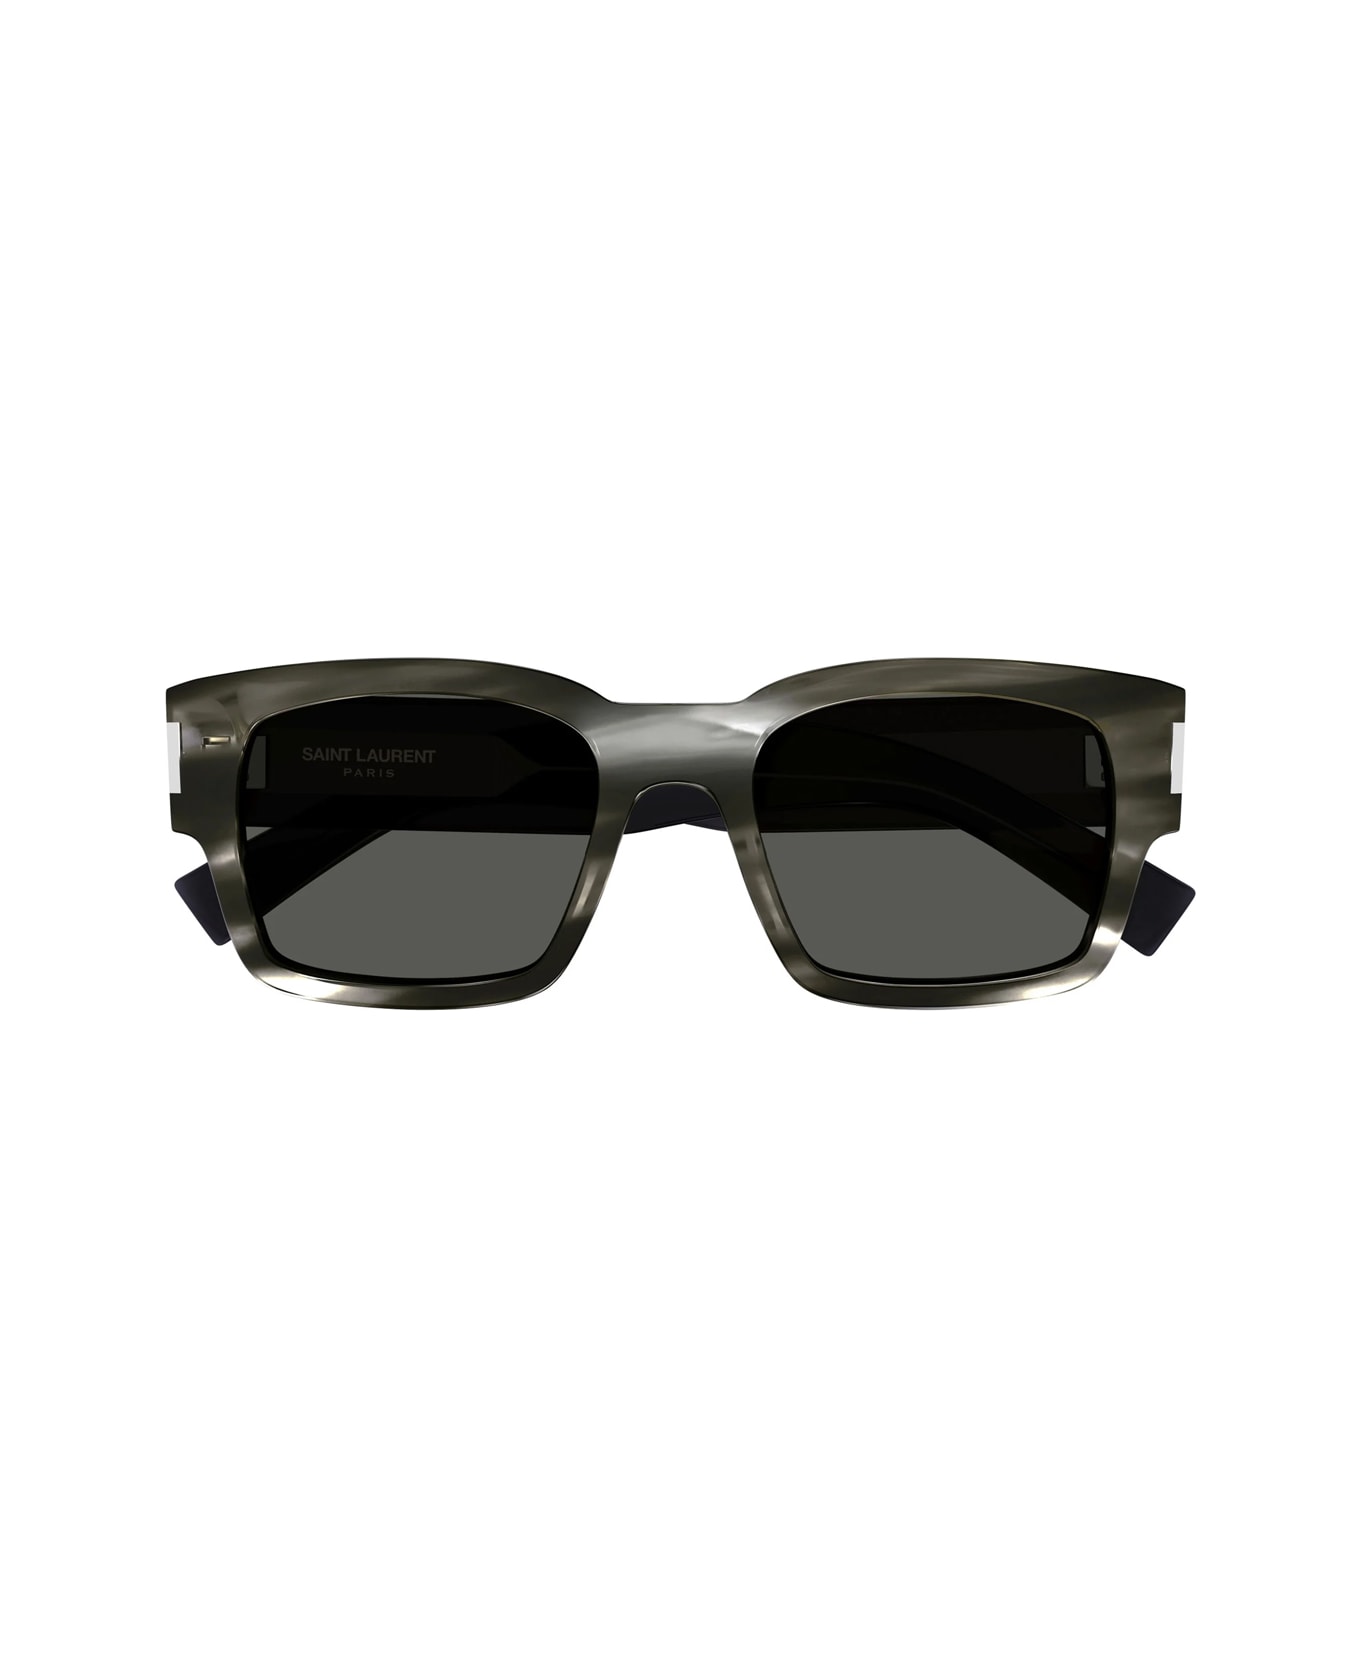 Saint Laurent Eyewear Sl 617 004 Sunglasses - Grigio